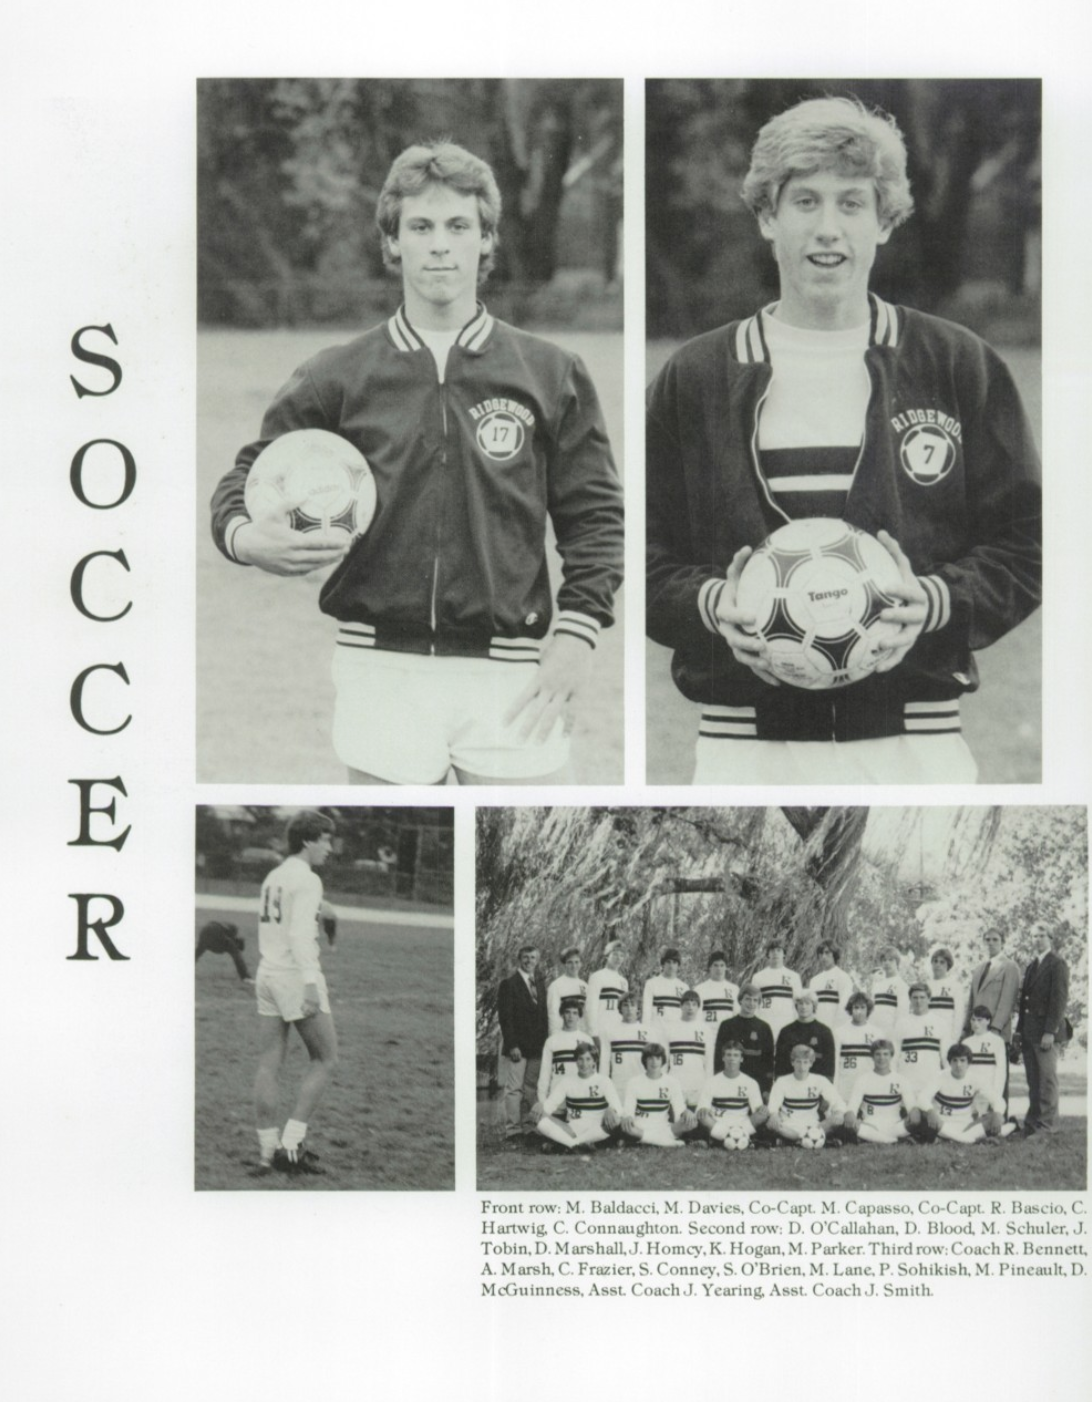 1983 Boys’ Soccer Team